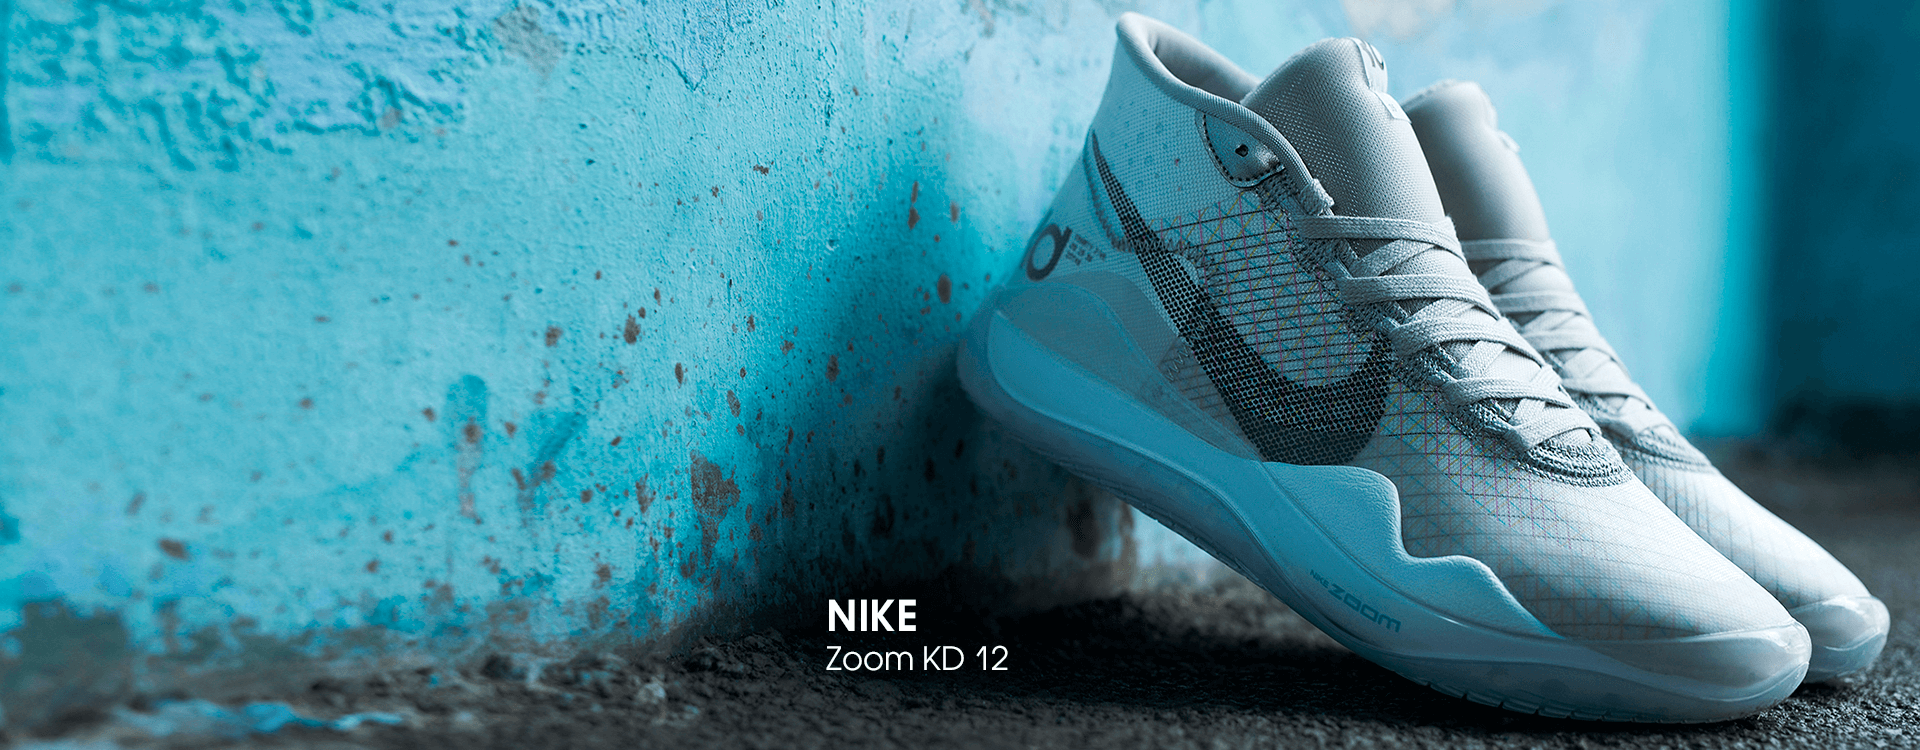 Баскетбольные кроссовки Nike Zoom KD 12